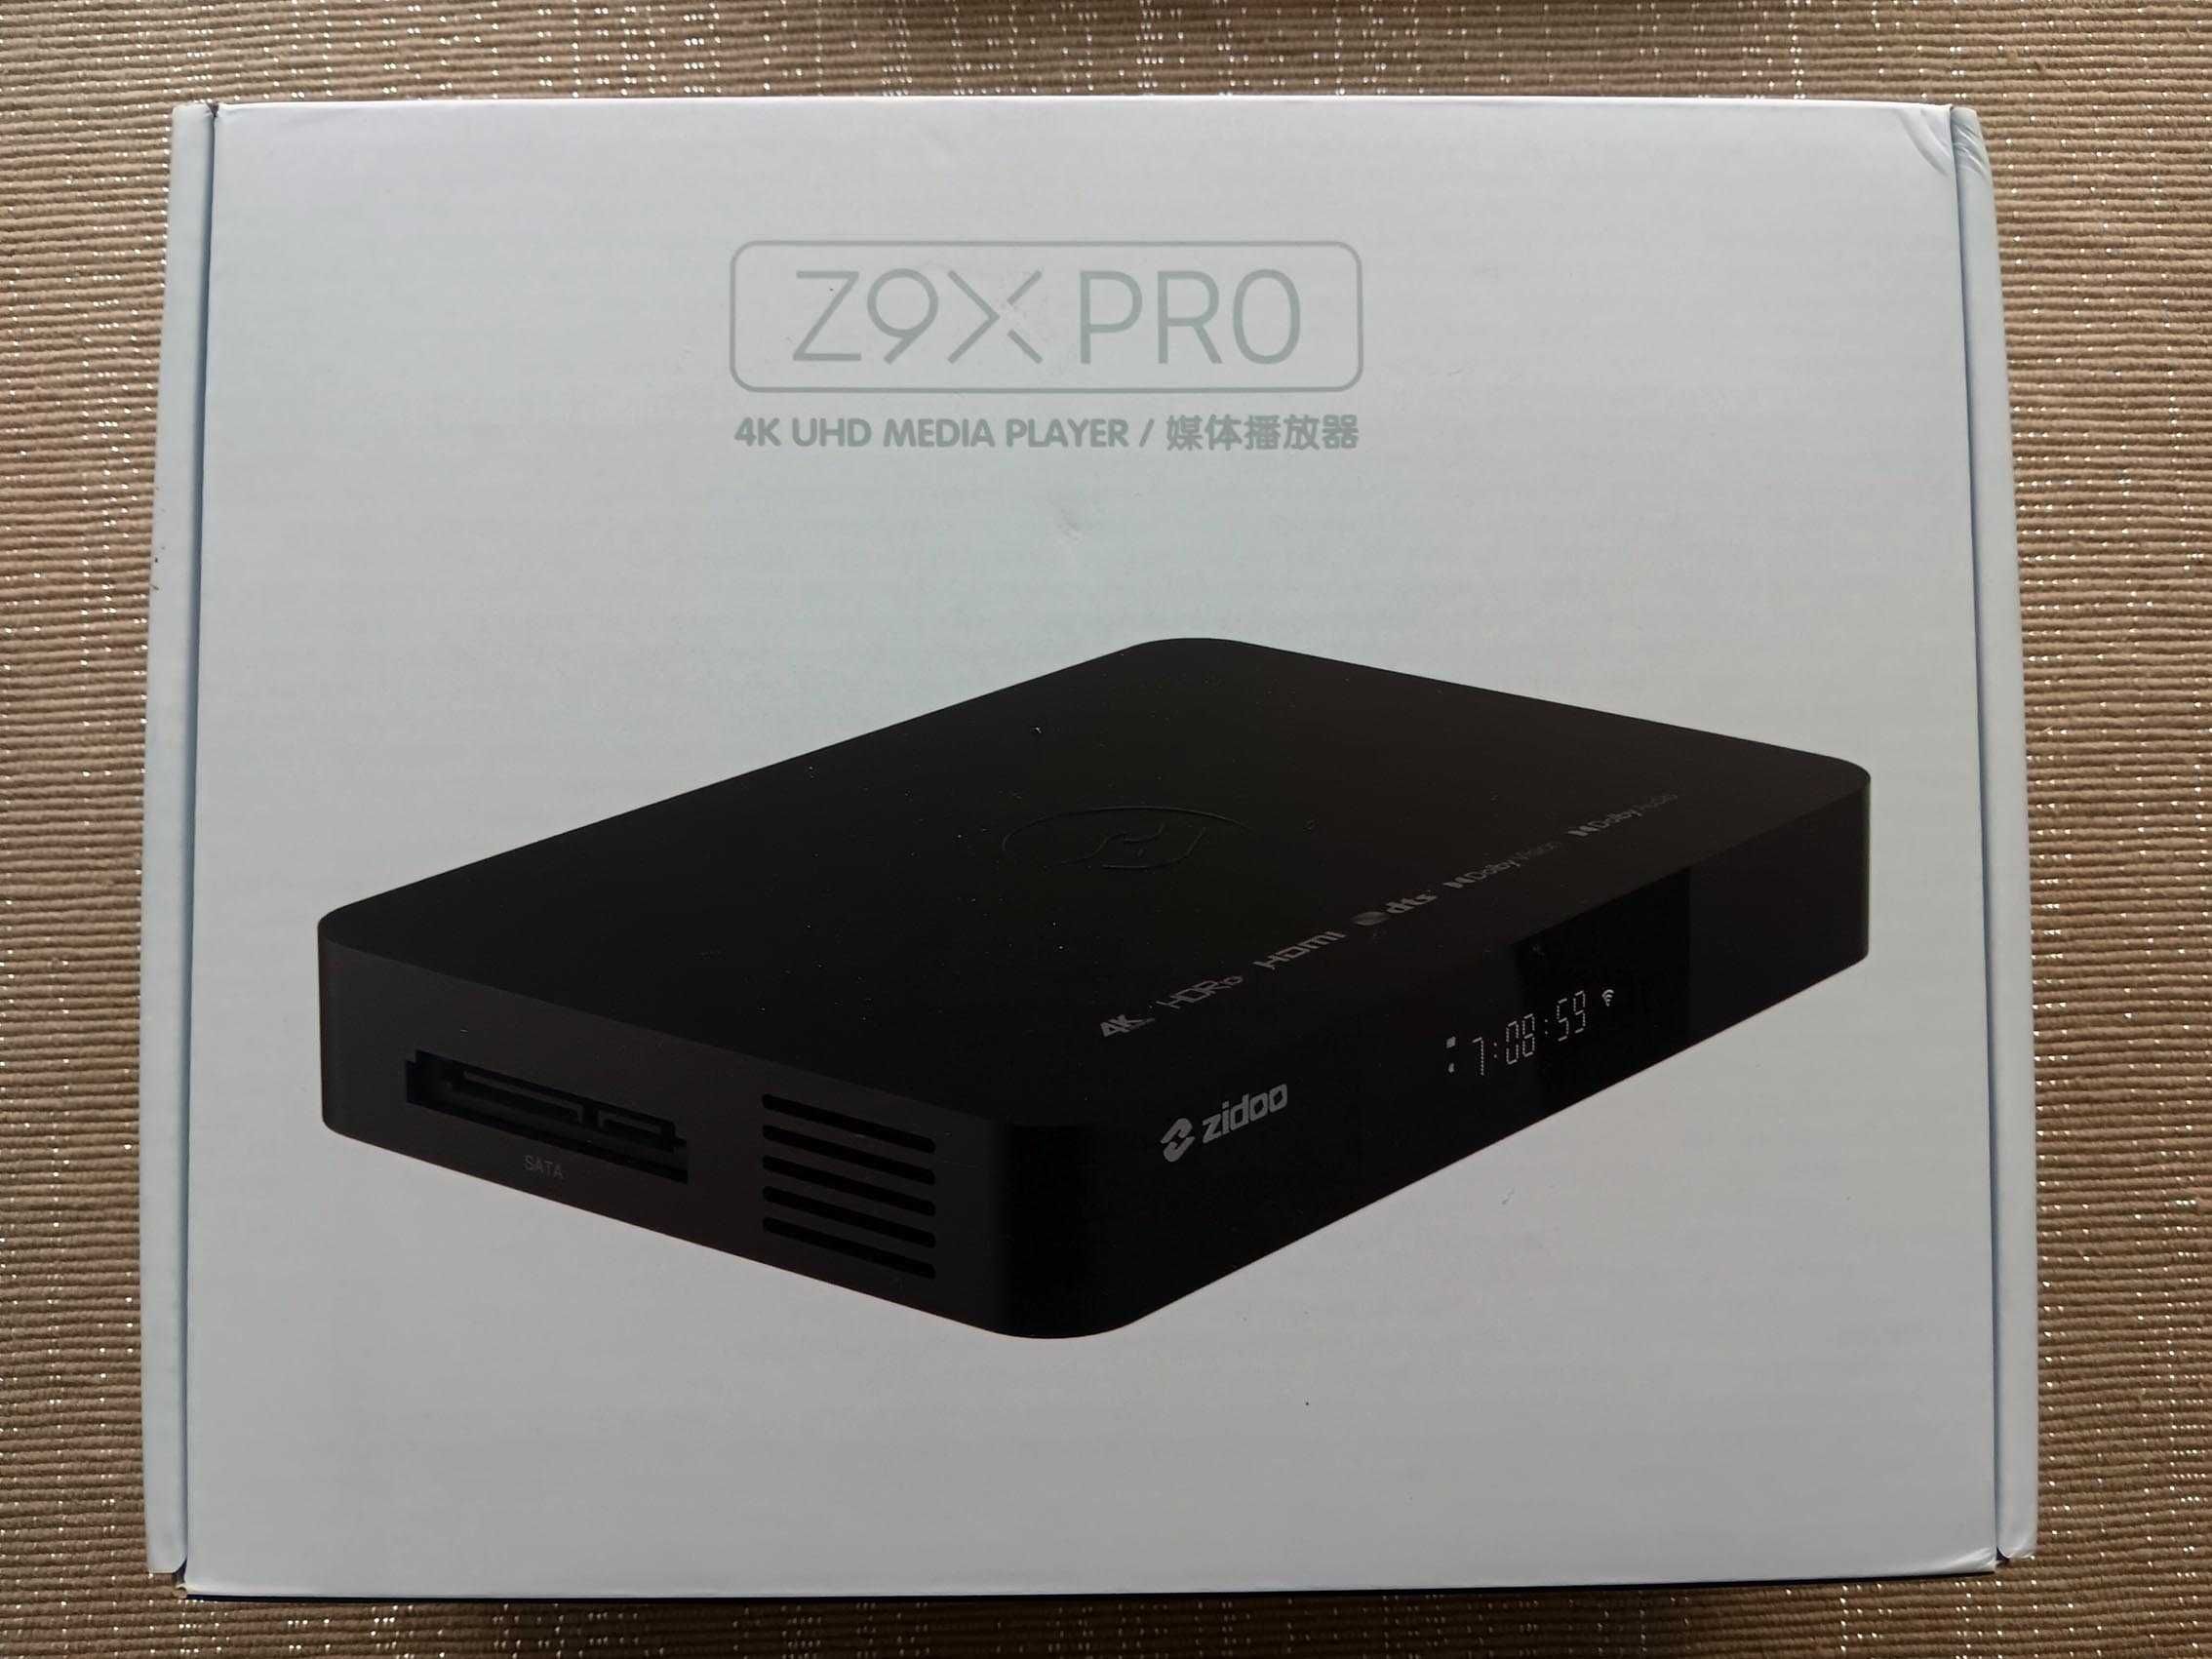 Media Player Zidoo Z9X Pro